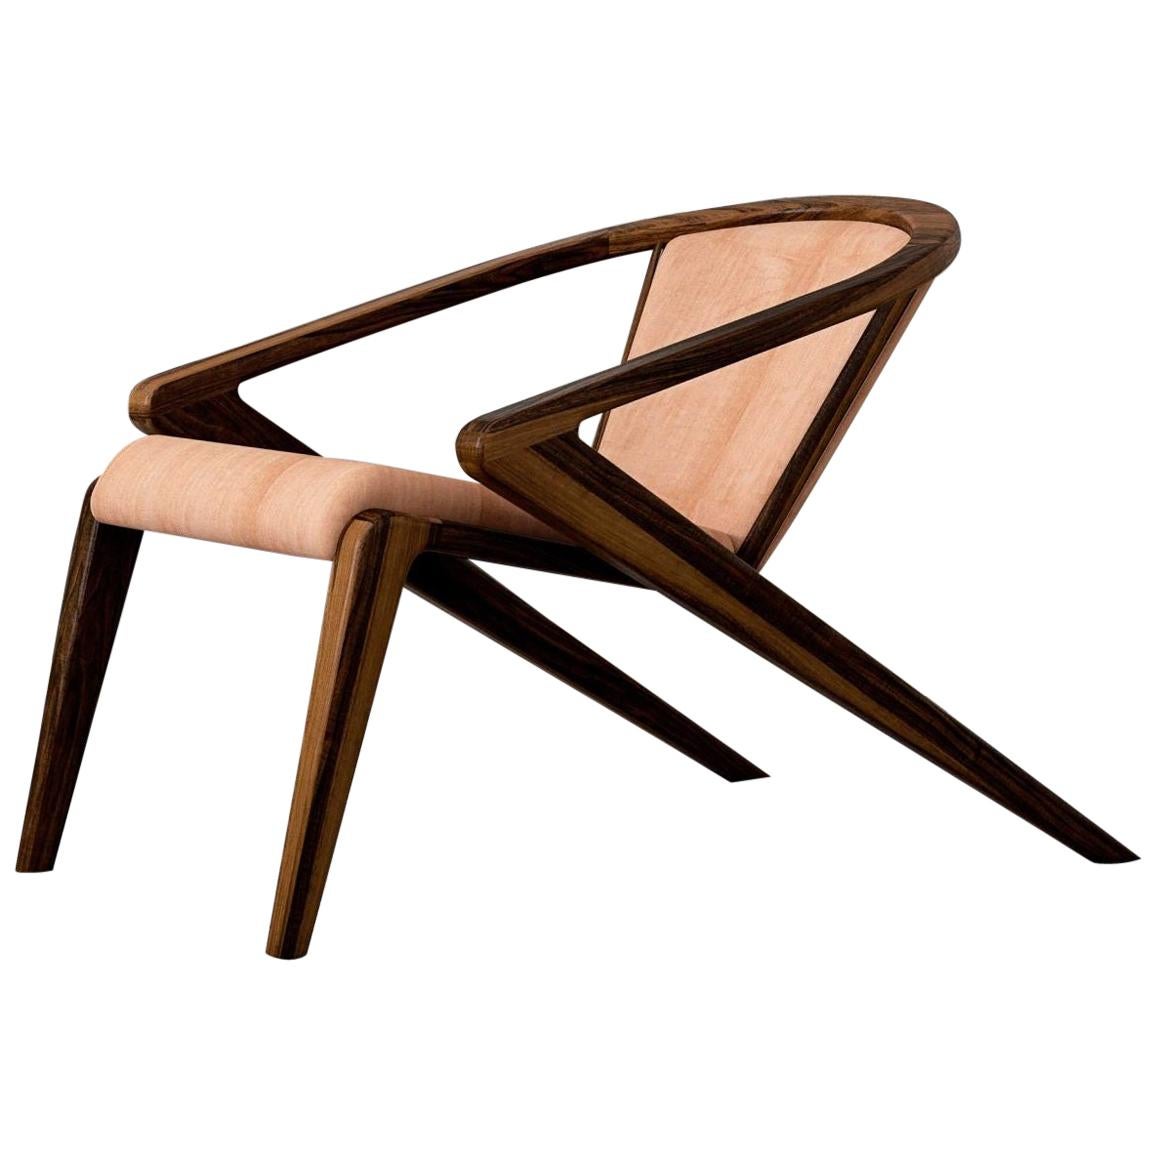 P.R Lounge Chair by Alexandre Caldas